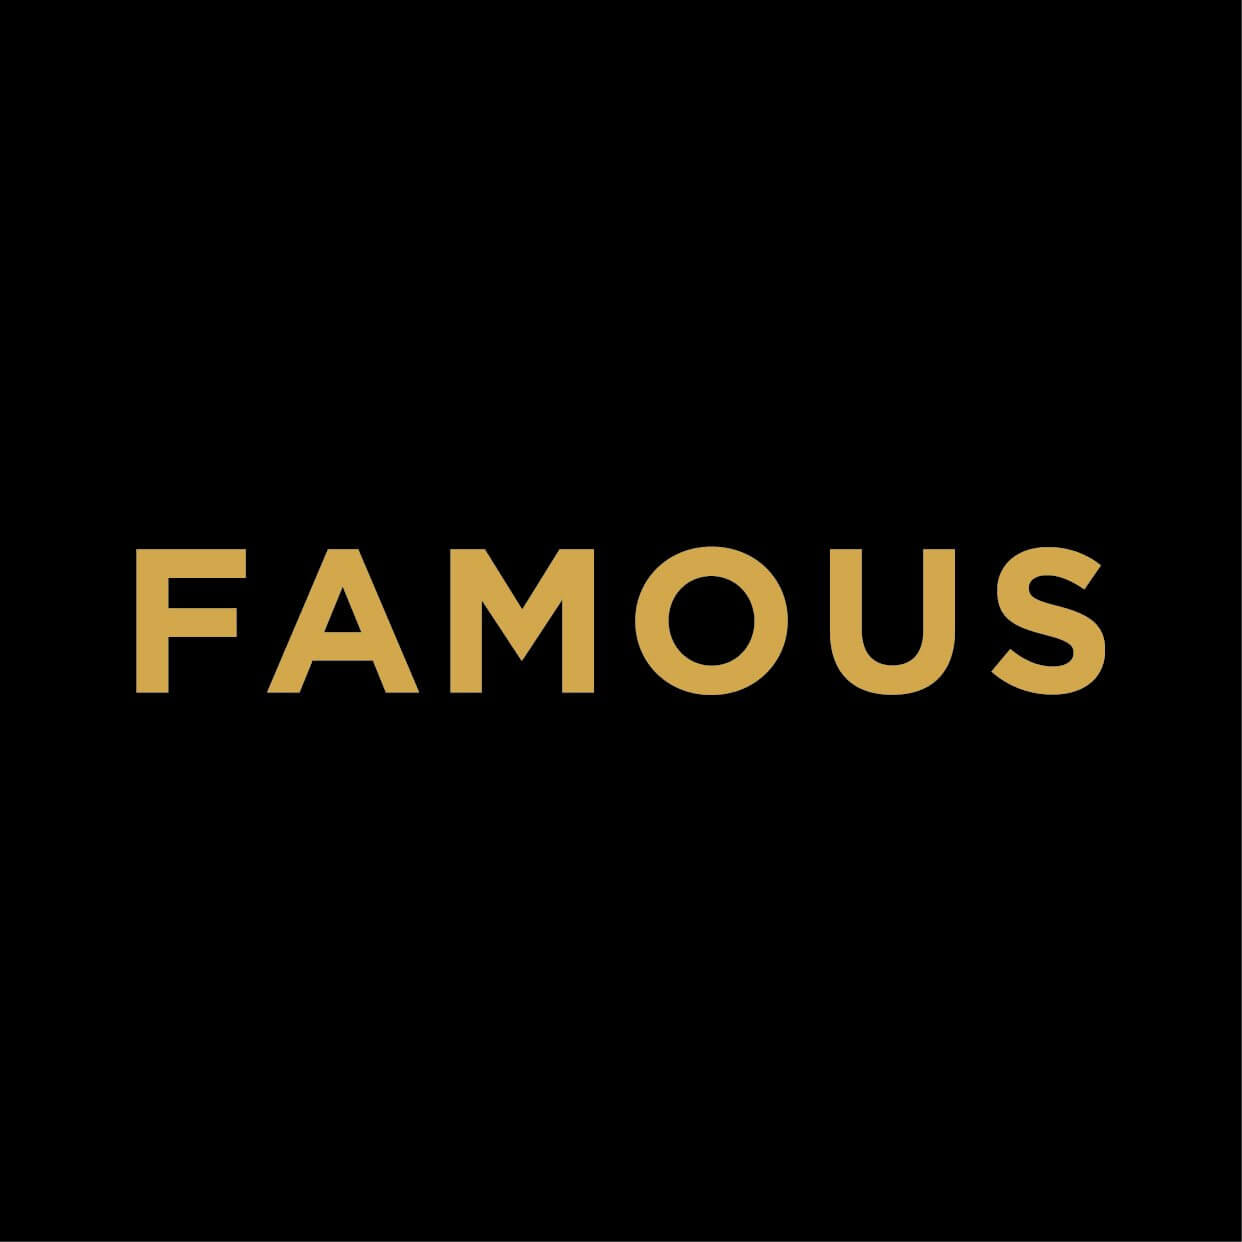 بررسی دو کلمه ی Infamous و Famous در زبان انگلیسی